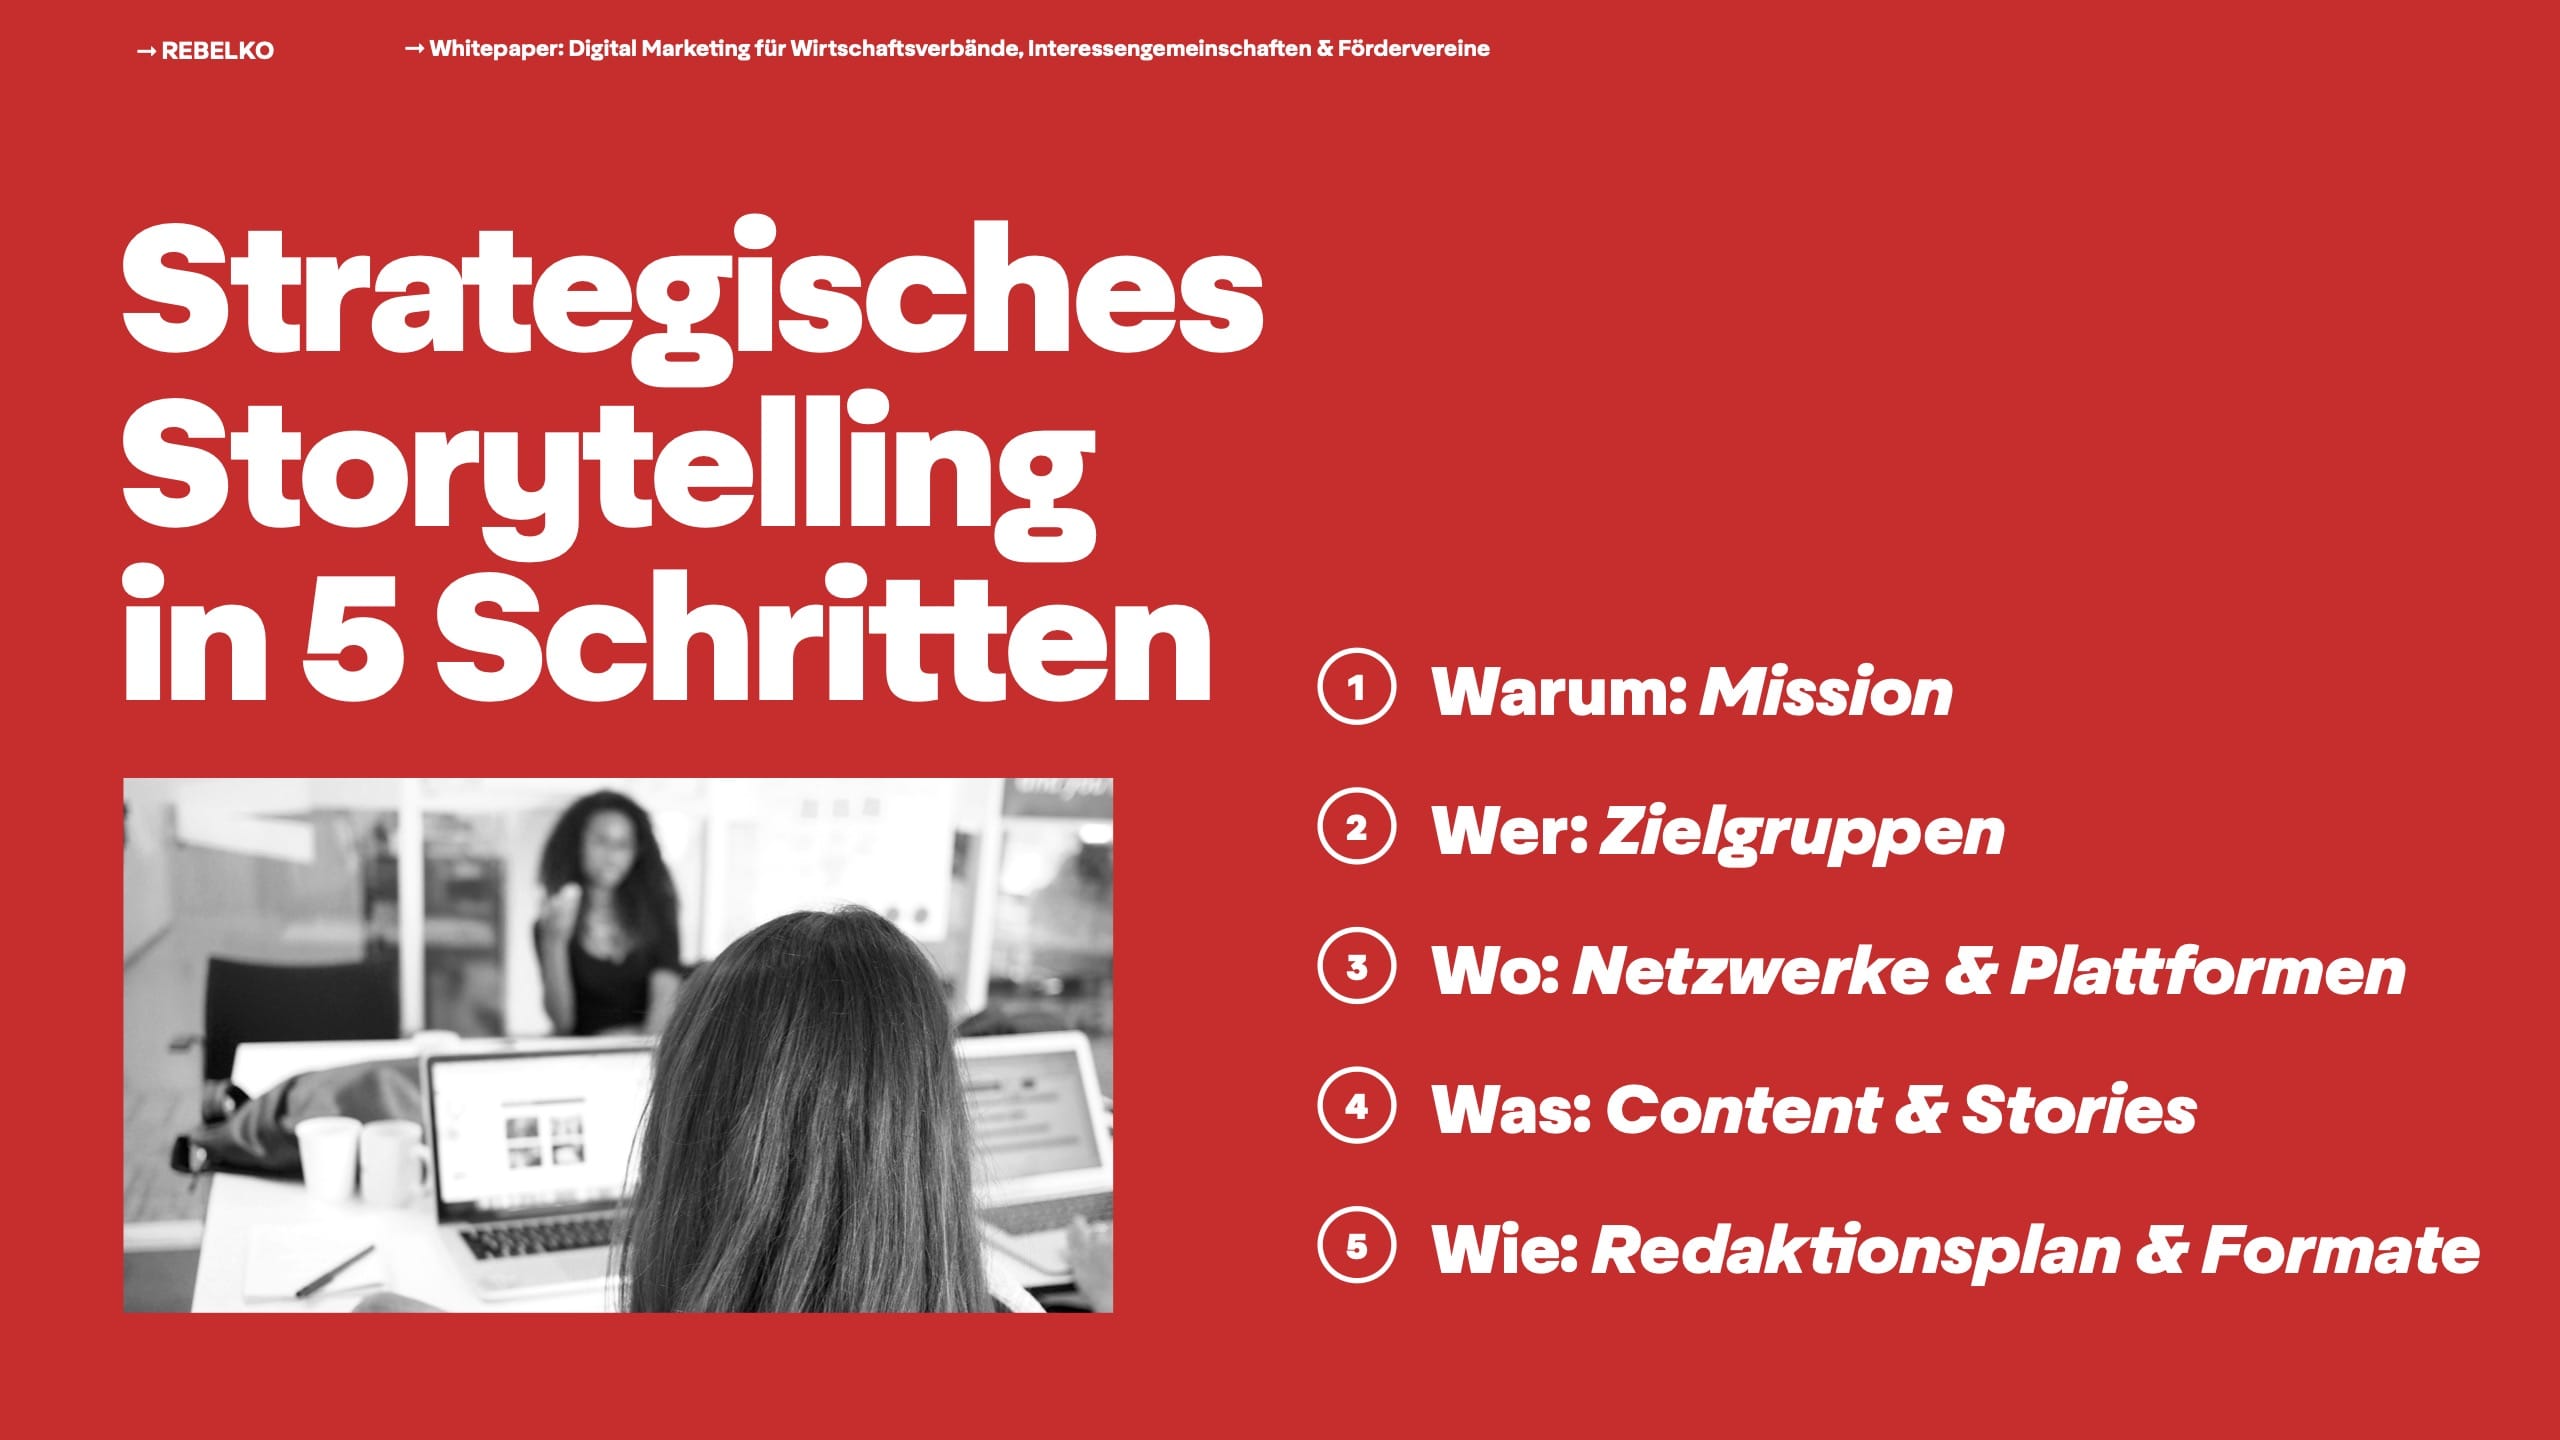 Whitepaper Digital Marketing fuer Wirtschaftsverbaende Interessengemeinschaften und Foerdervereine 2022 02